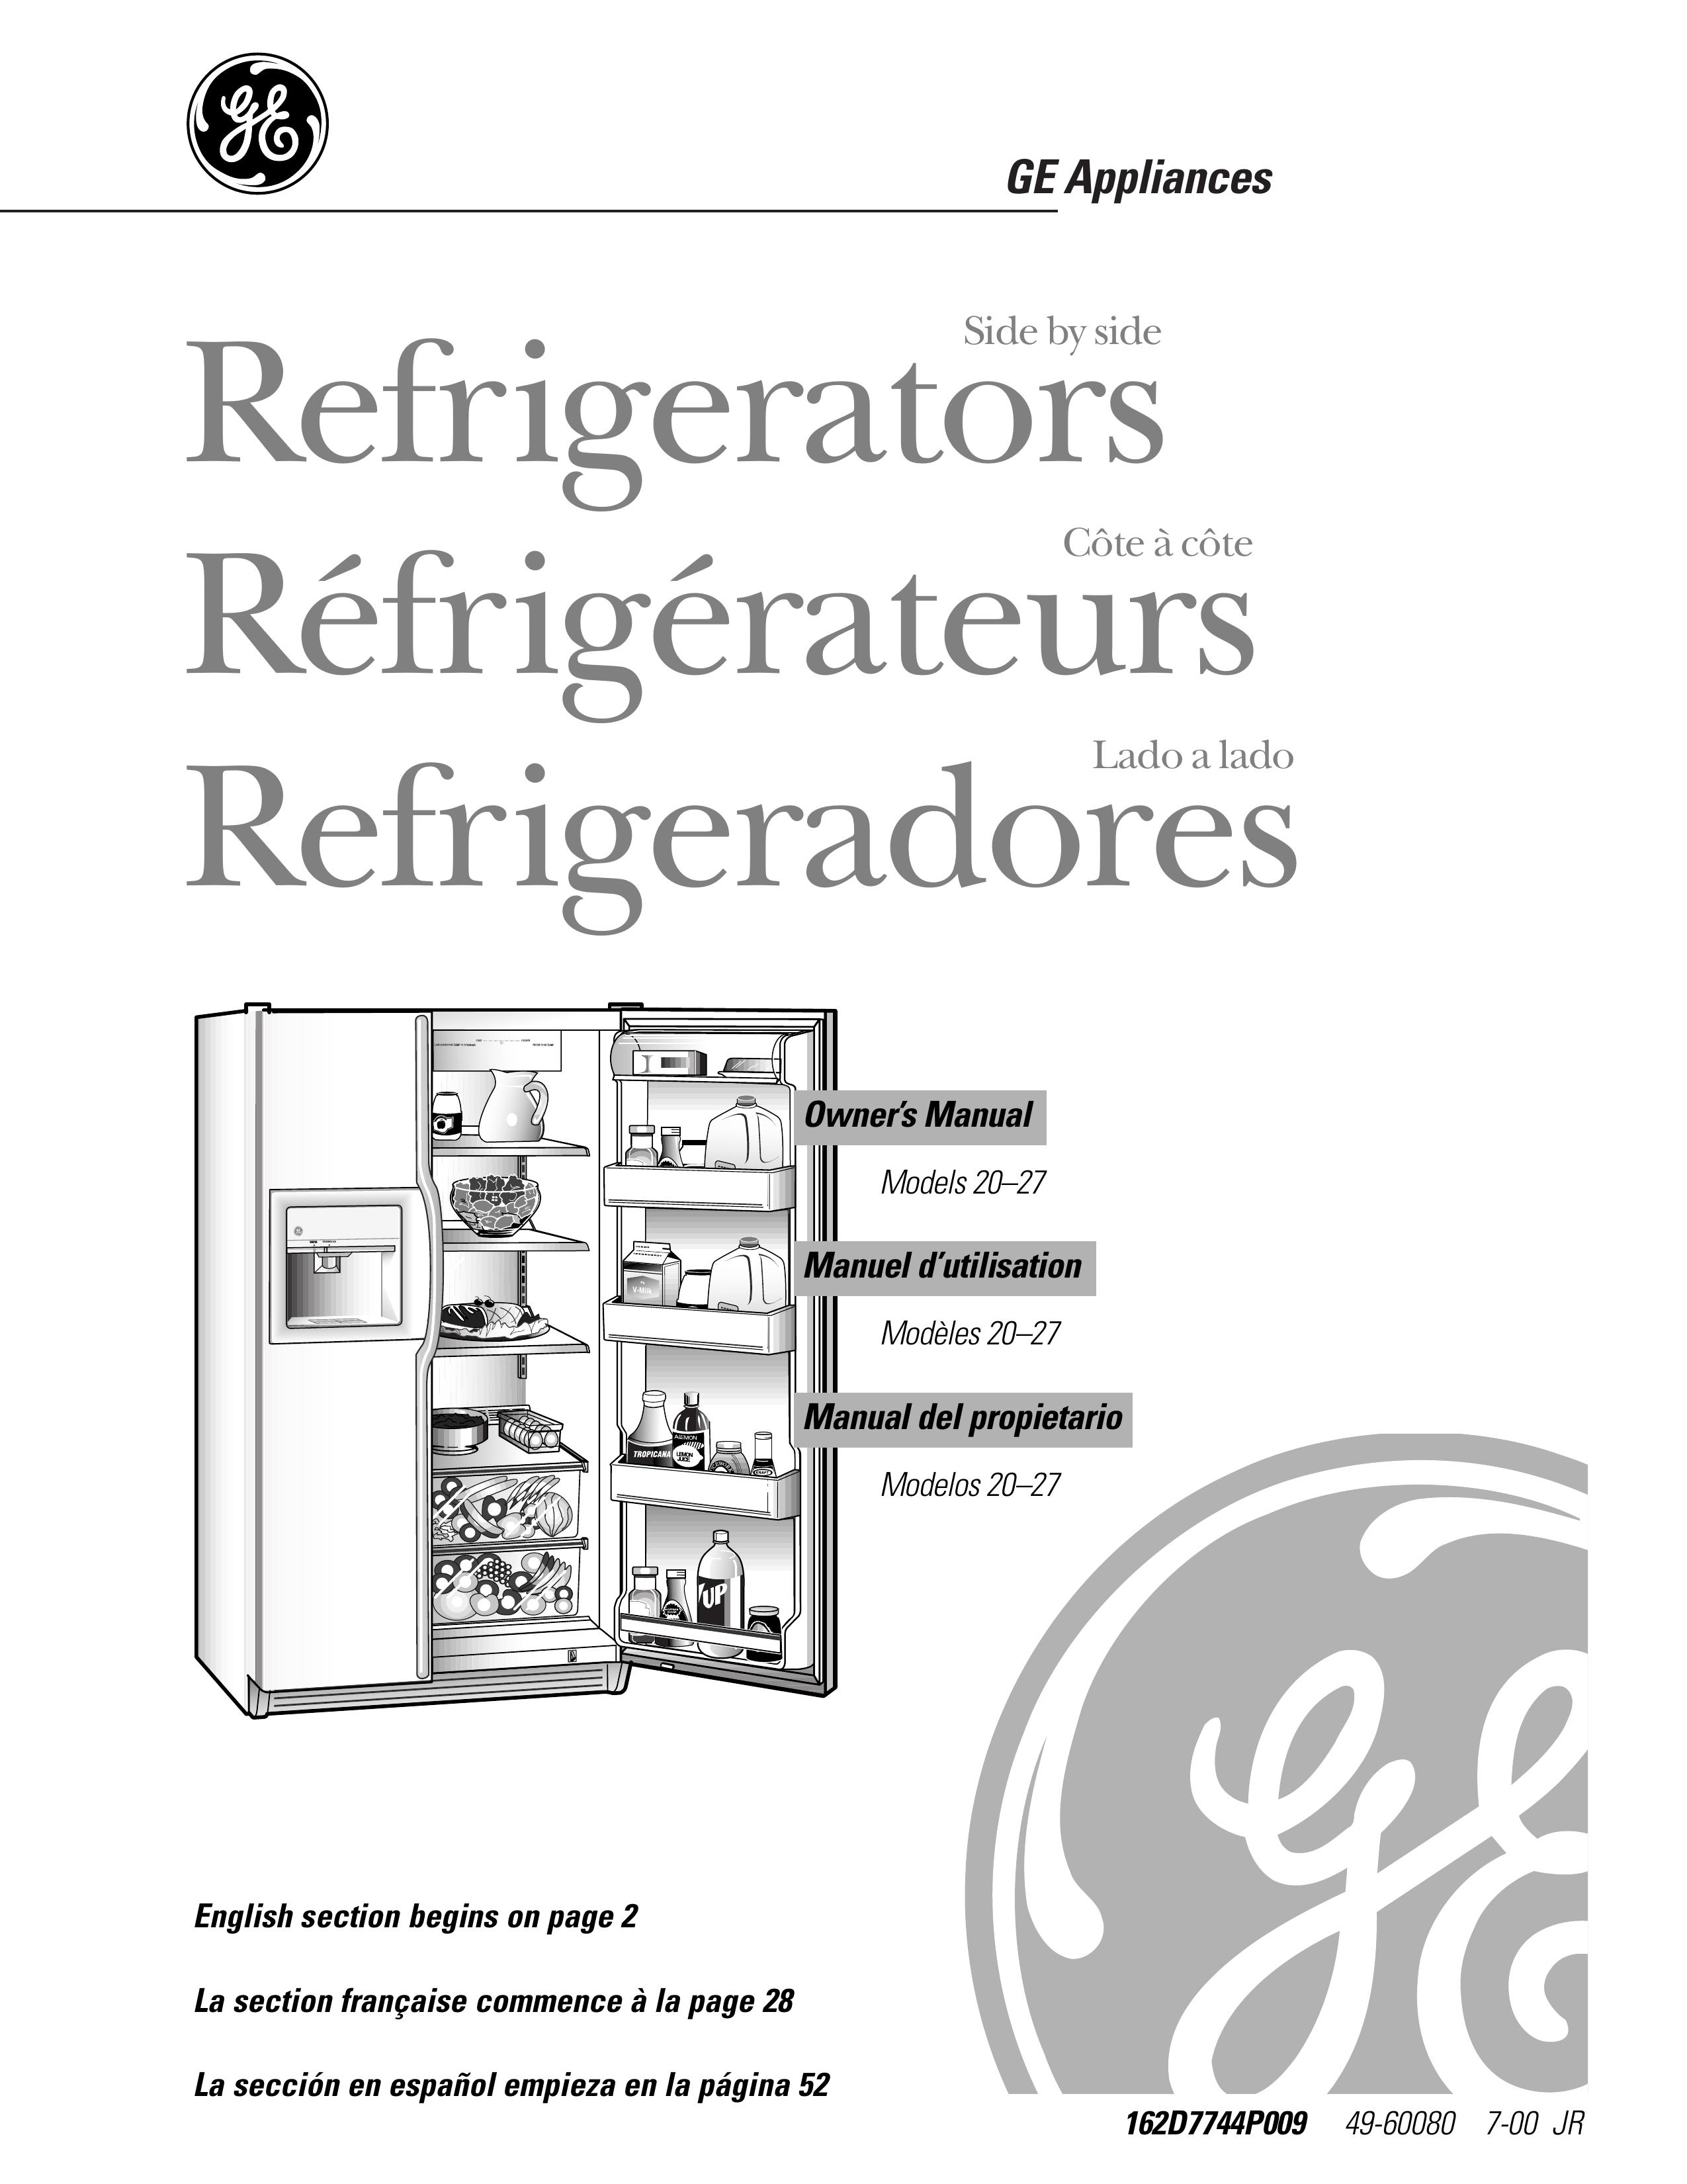 GE 162D7744P009 Refrigerator User Manual